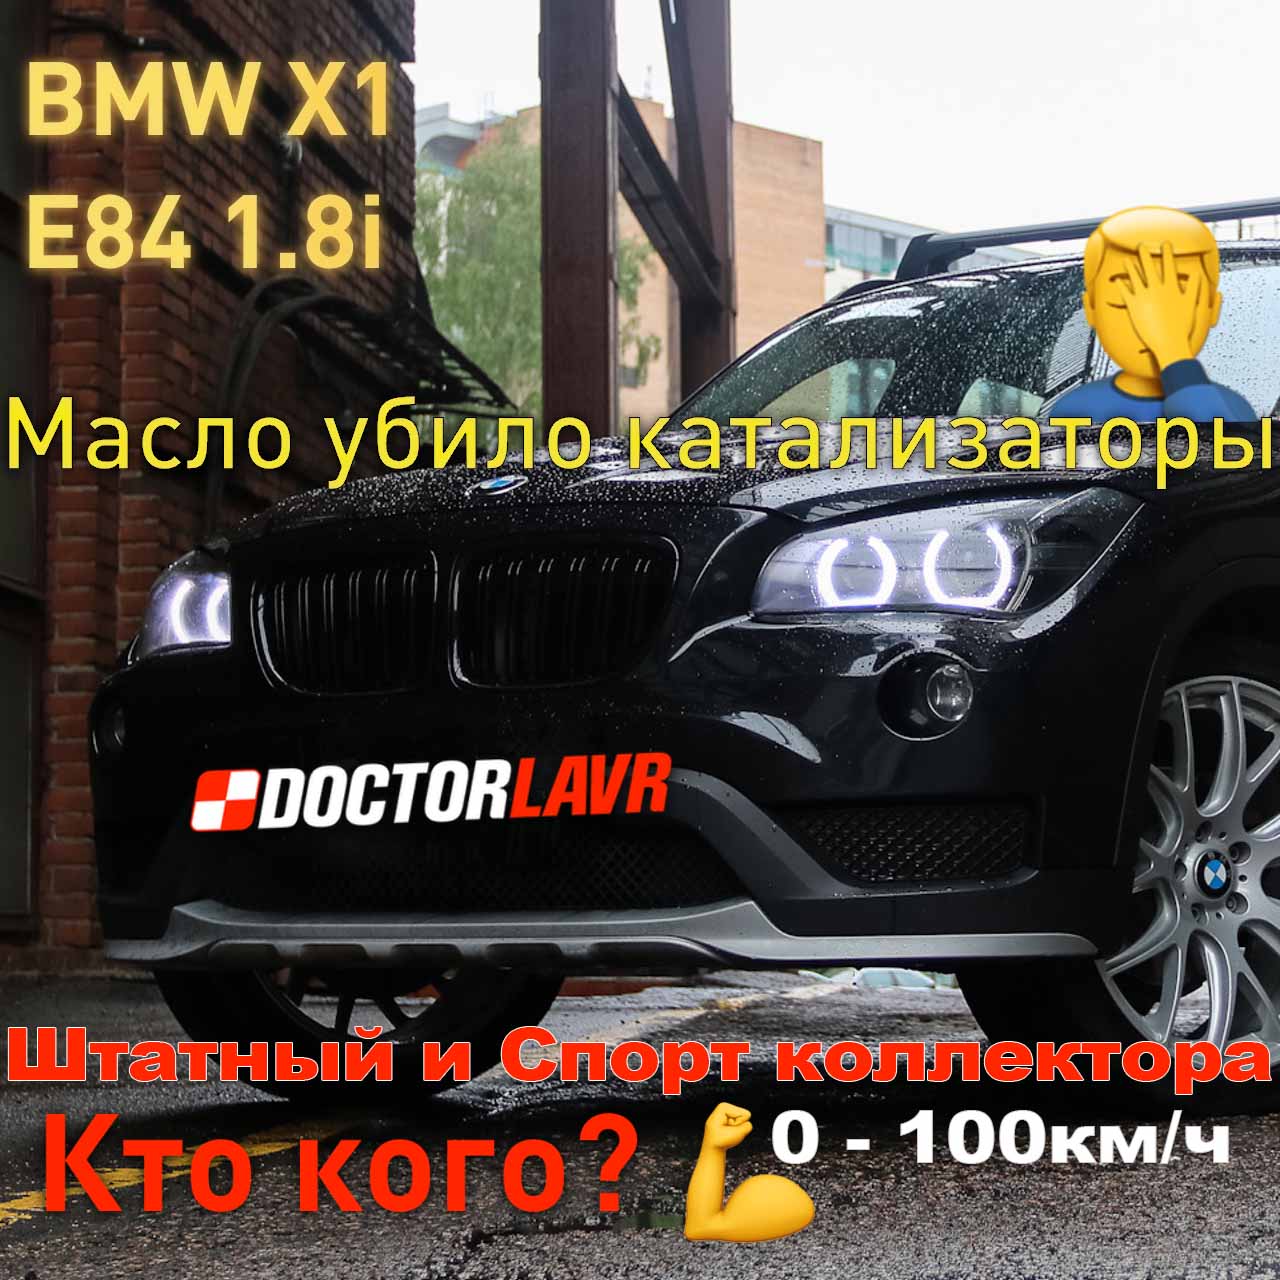 BMW X1 E84 N46 Спорт коллектор. Разгон от 0 до 100км/ч. 